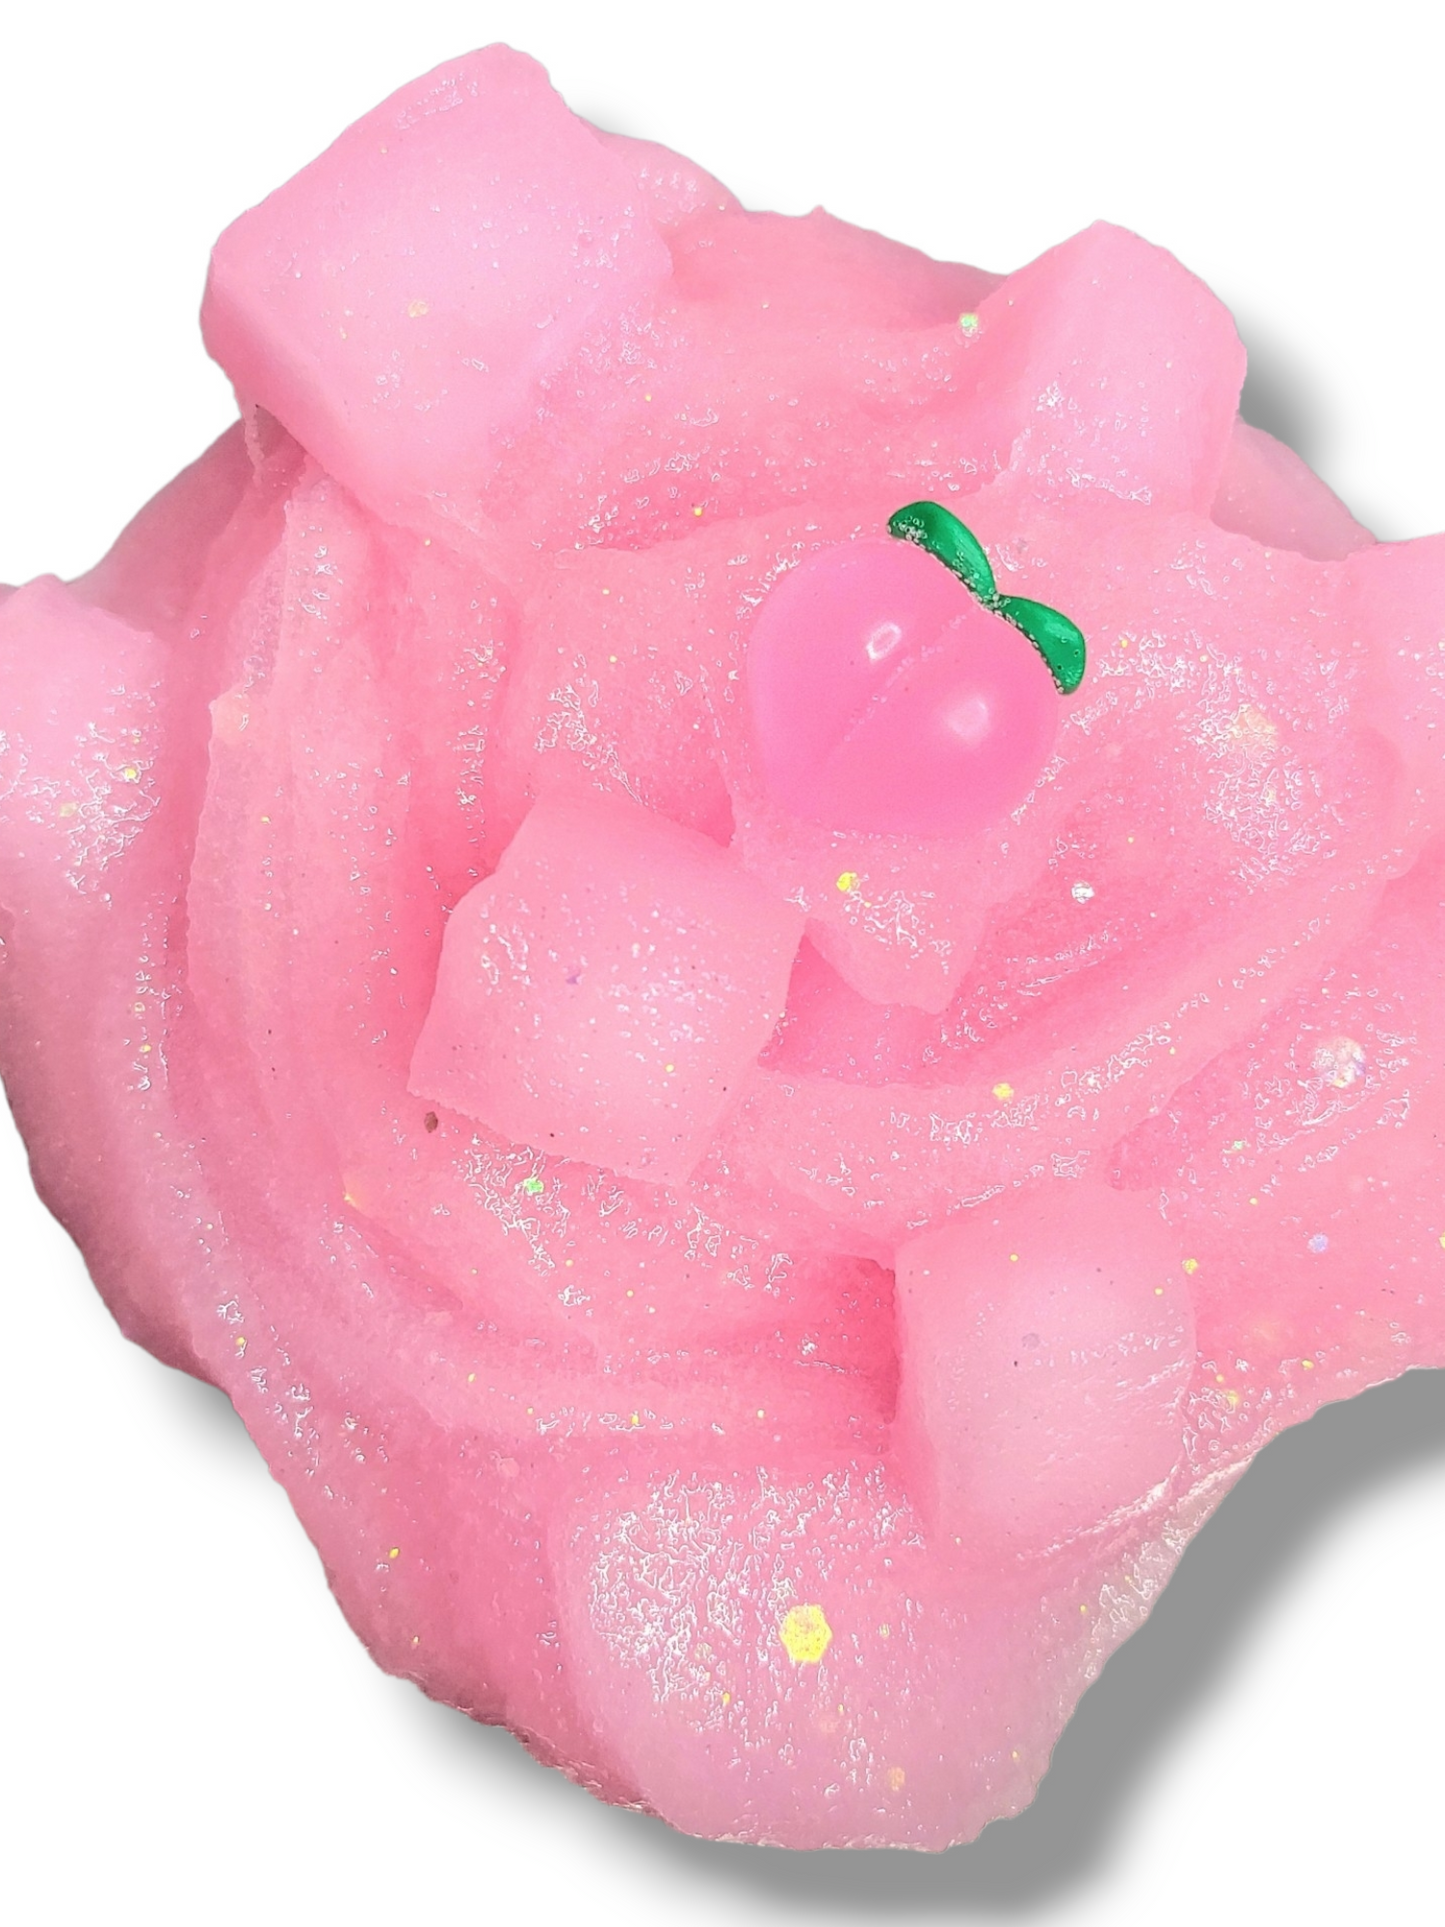 Kitty's Peach Jelly Cube Handmade Slime 32oz Slime by Hoshimi Slimes LLC | Hoshimi Slimes LLC